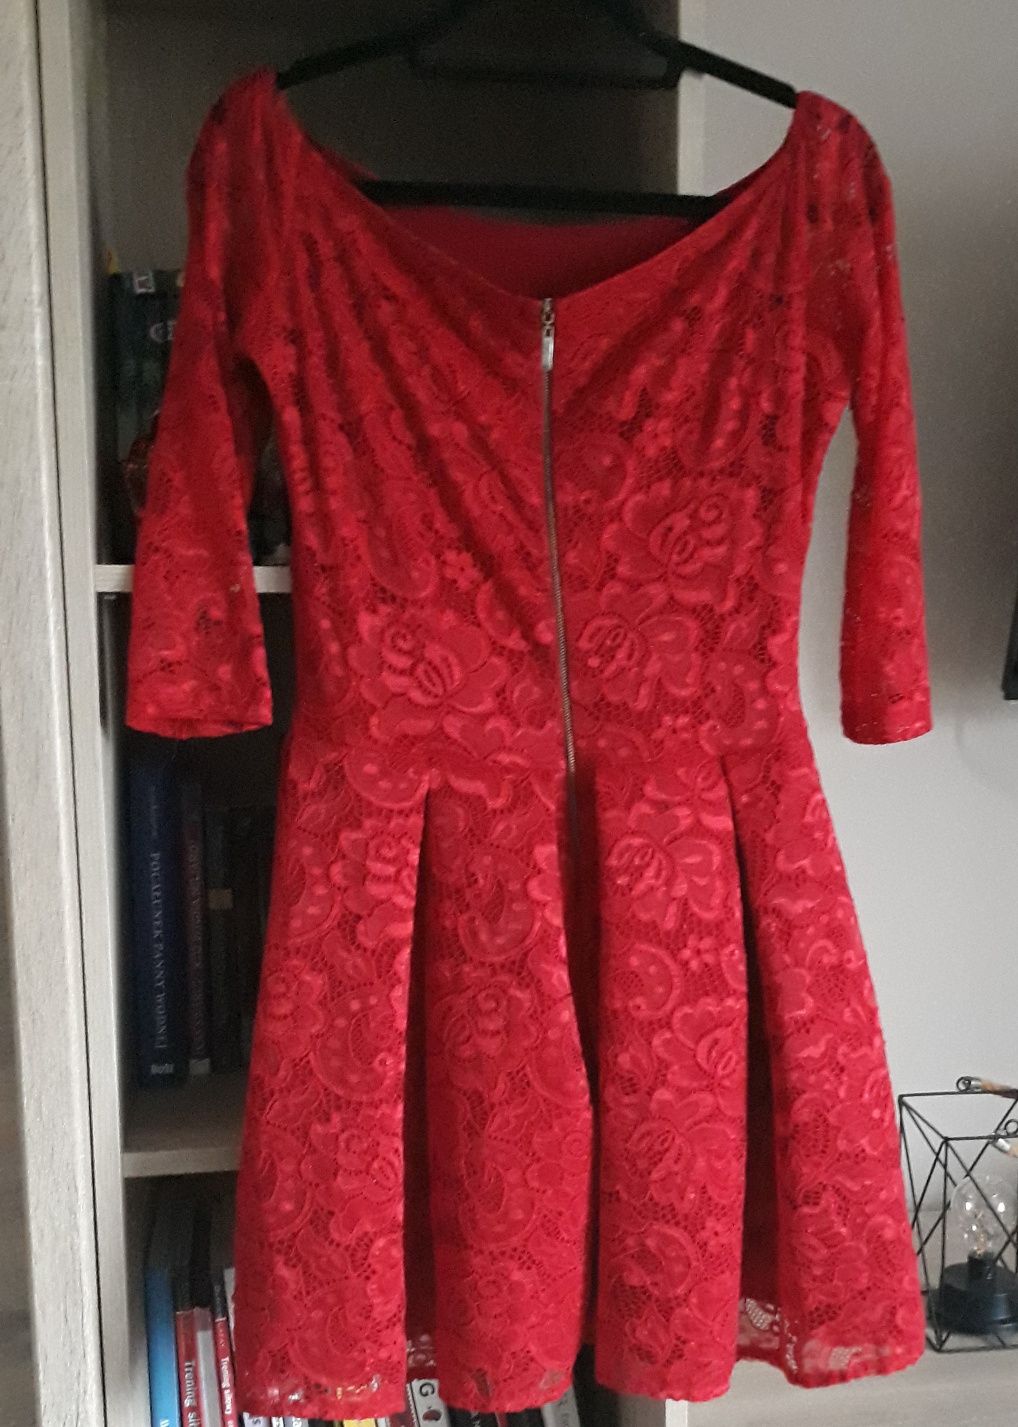 Sukienka S. Moriss czerwona koronkowa studniówka rozmiar M